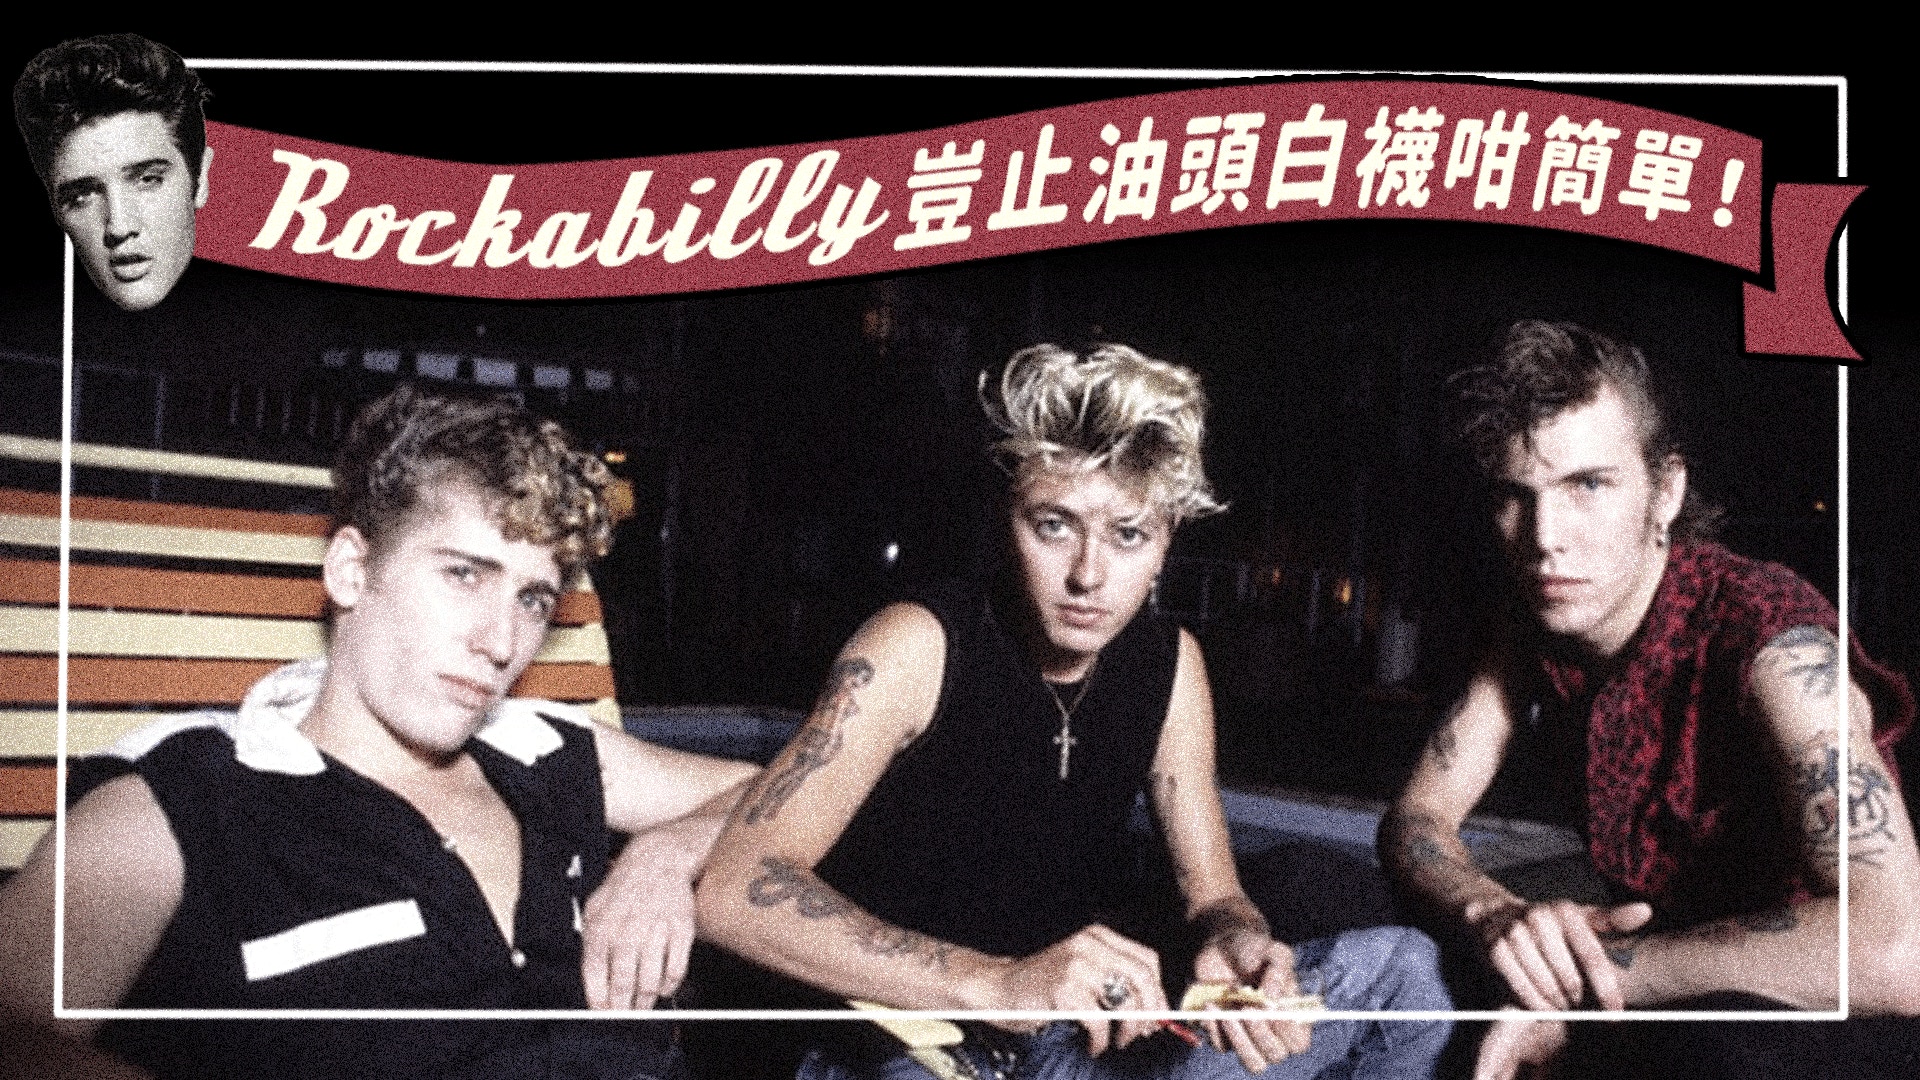 Rockabilly特集 宣洩自我的搖滾與紋身 香港01 第二身